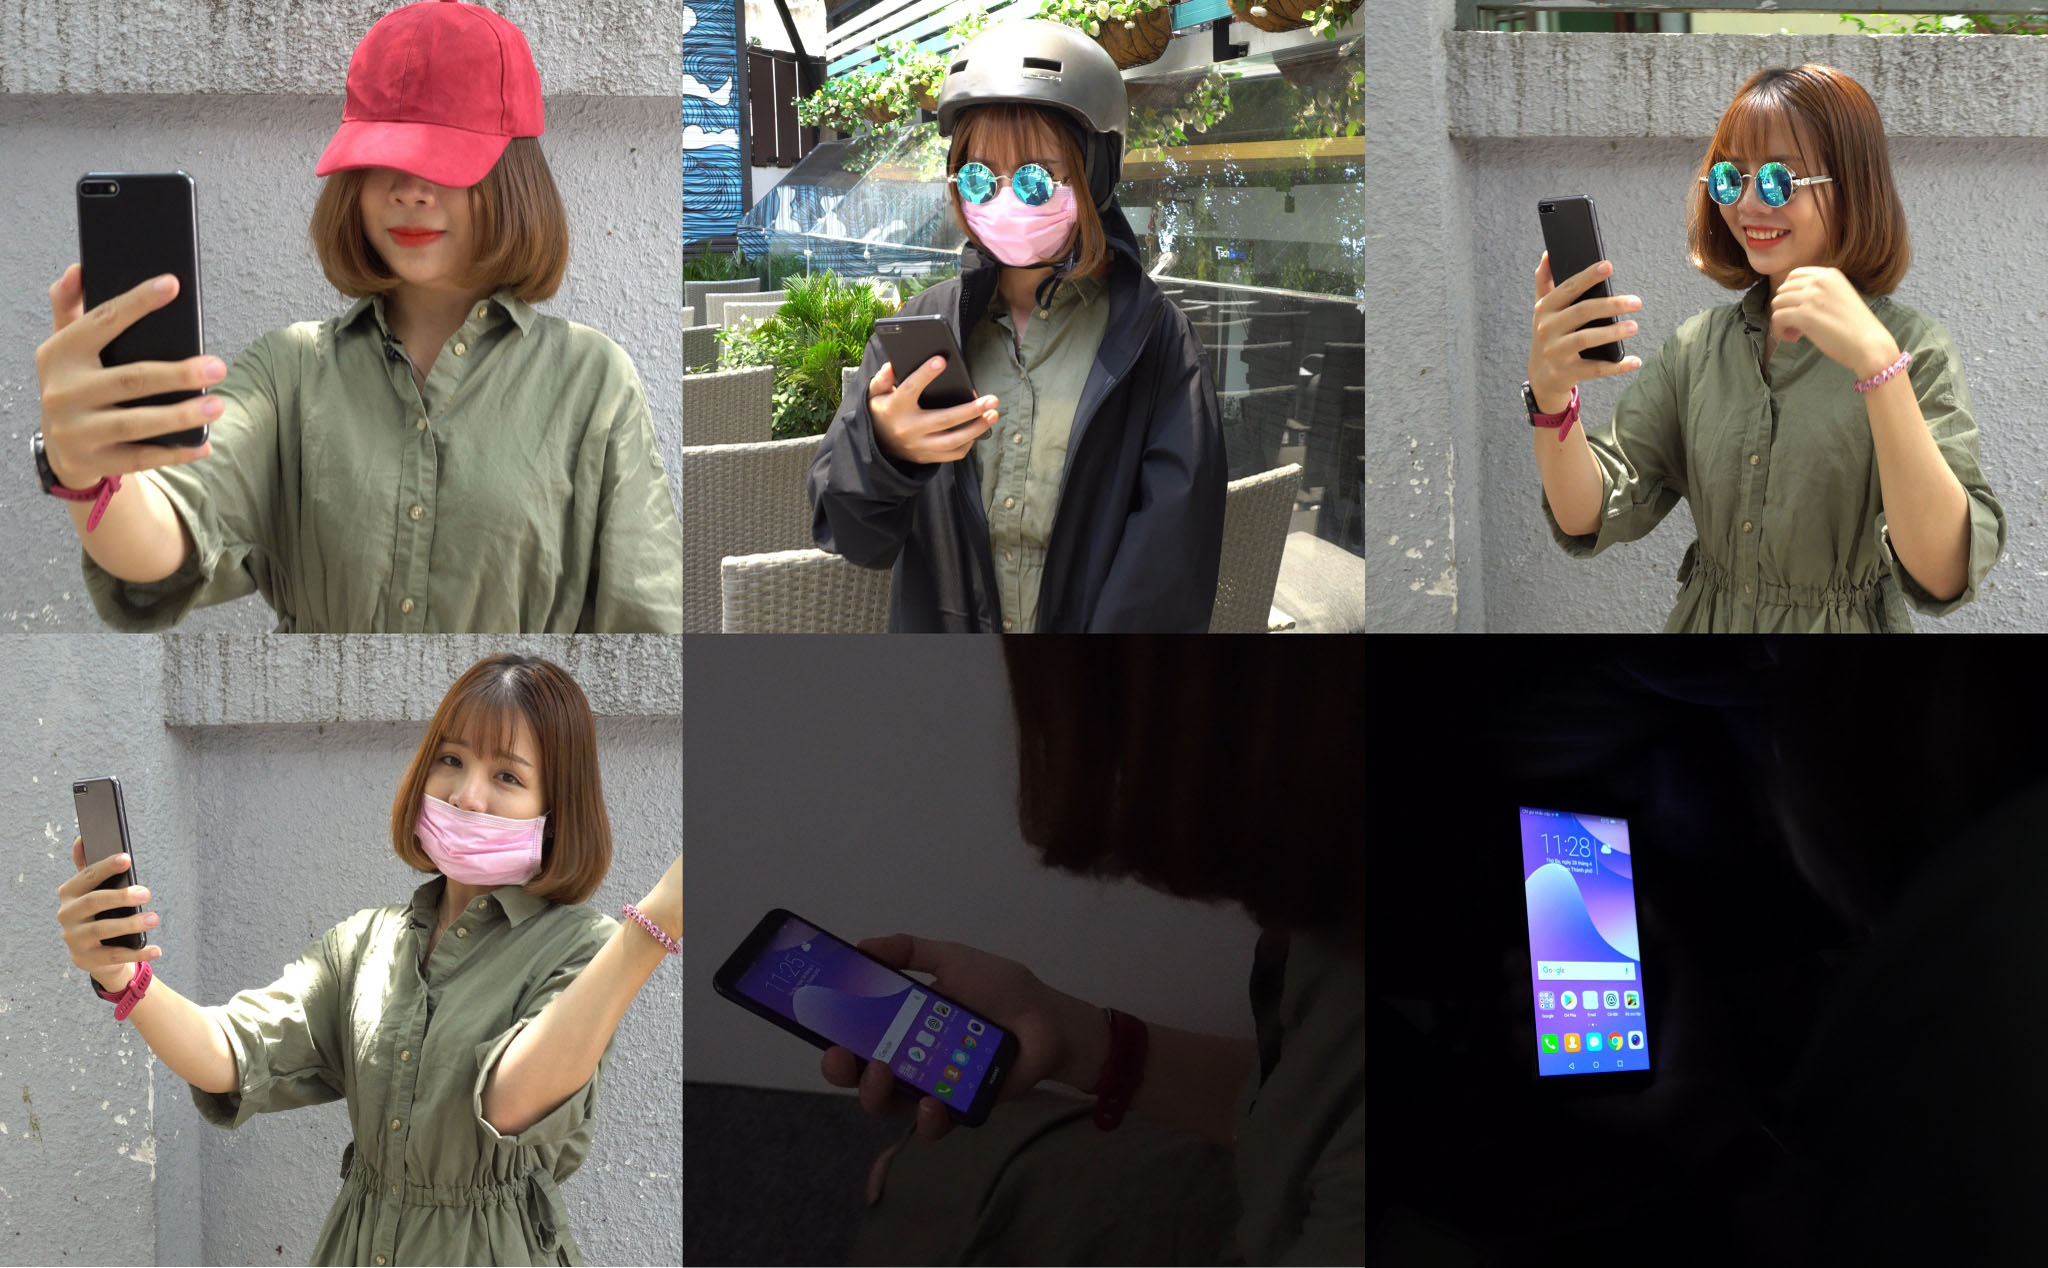 Thử nghiệm face unlock trên 100 smartphone: 42 chiếc chỉ cần ảnh đã mở được máy